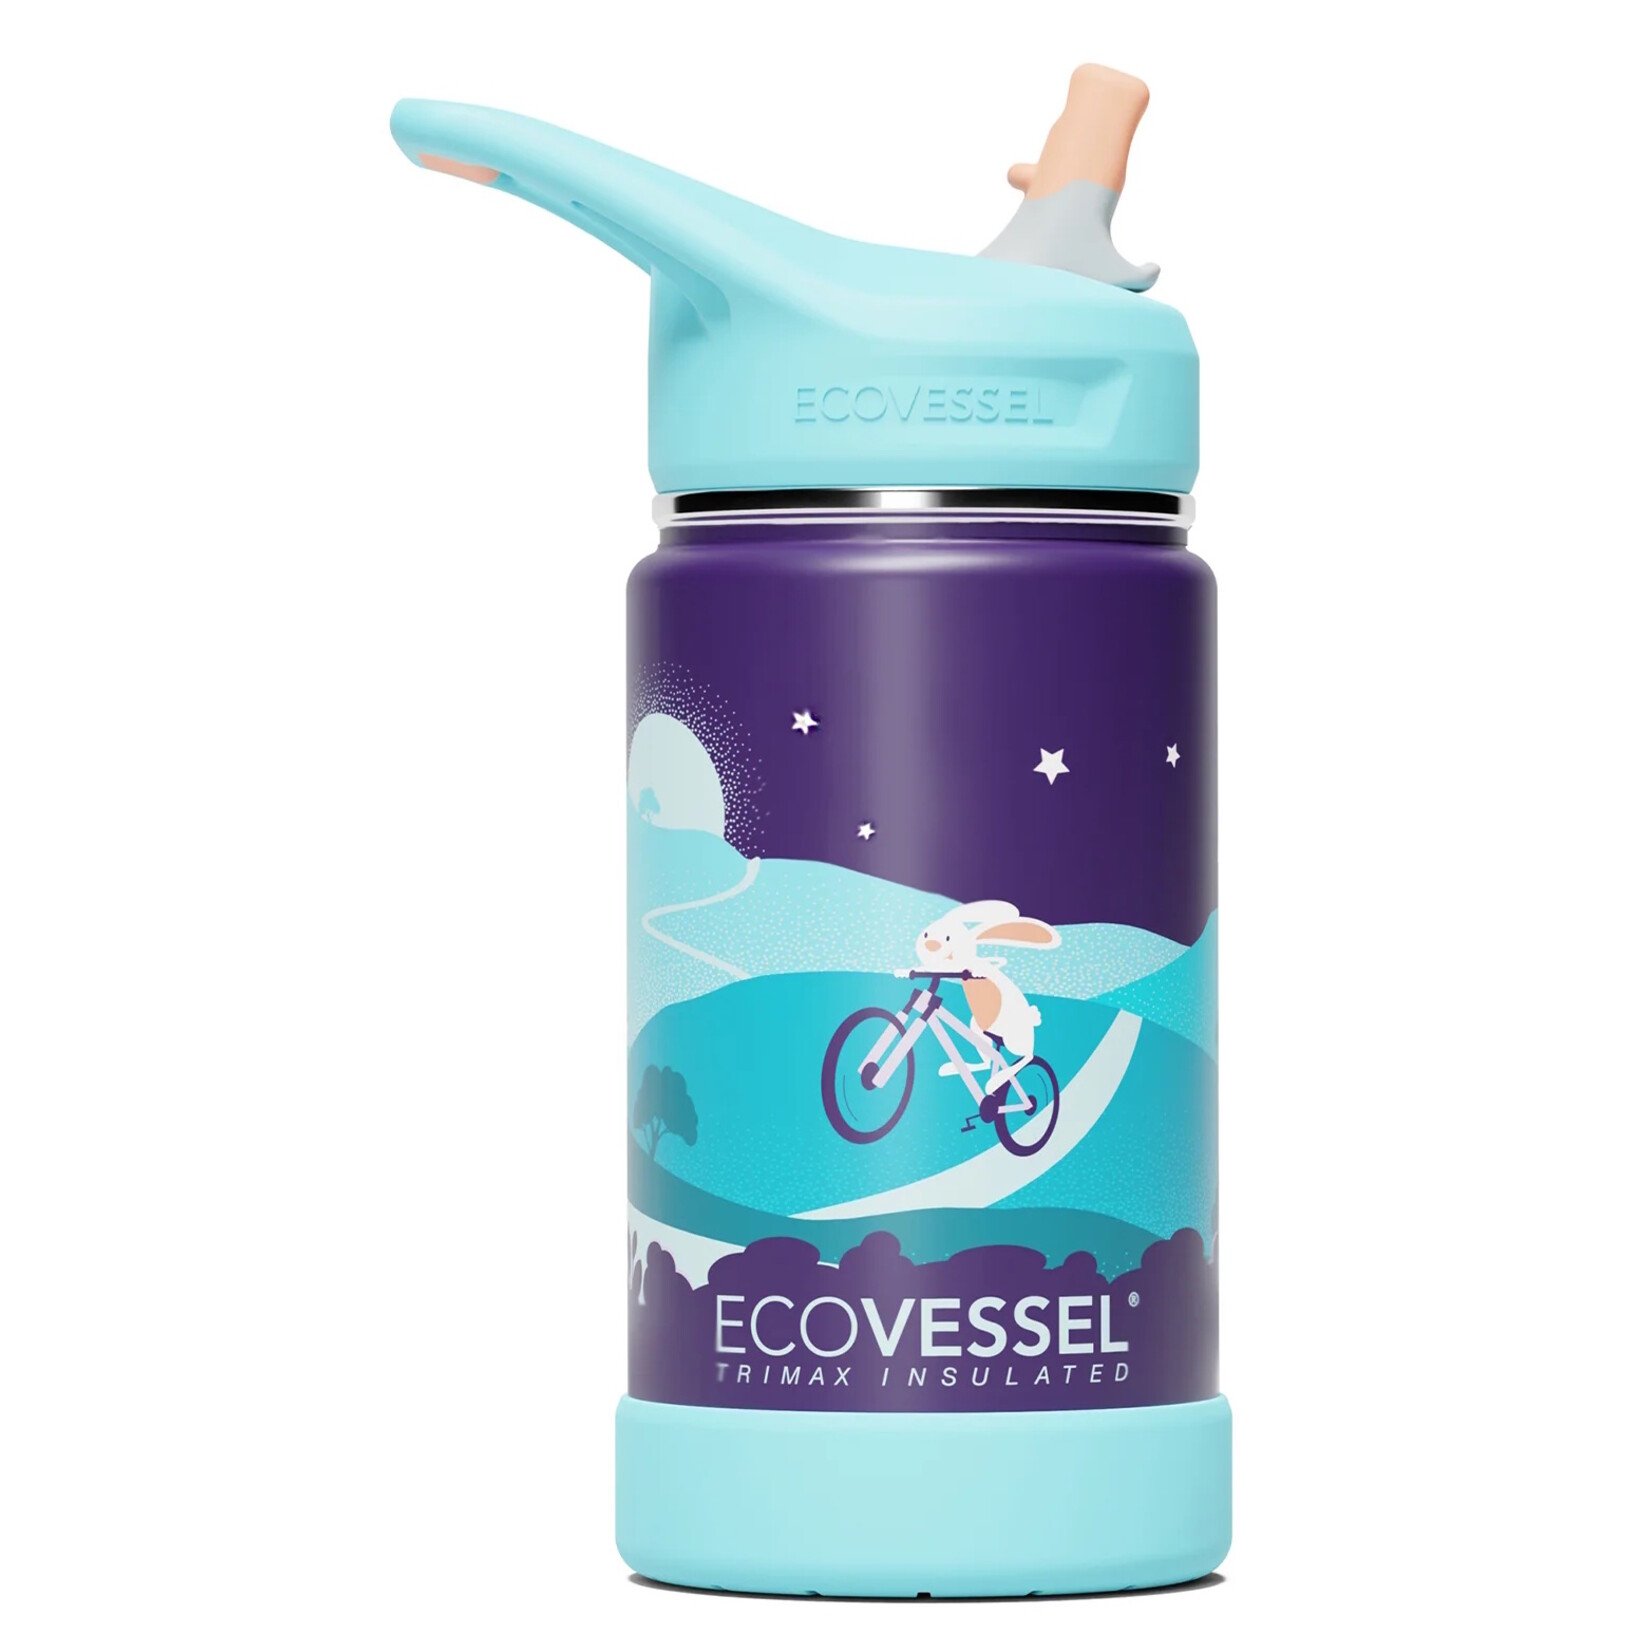 https://cdn.shoplightspeed.com/shops/661777/files/56333909/1652x1652x2/ecovessel-ecovessel-frost-water-bottle-12oz.jpg